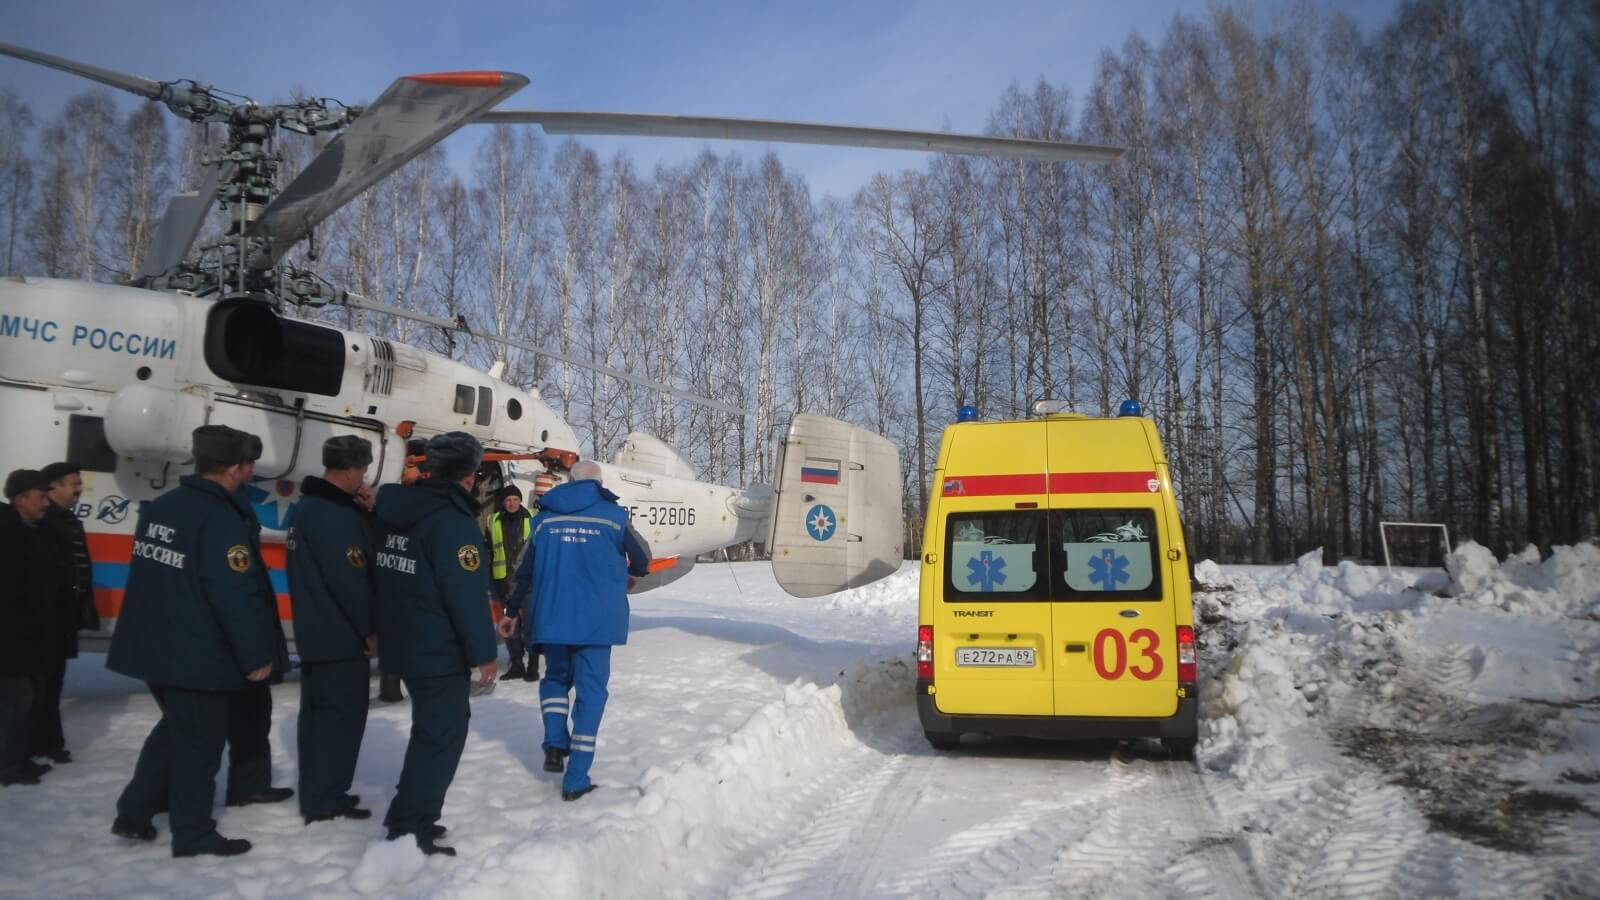 Жителя Краснохолмского района транспортировали в тверскую ОКБ на вертолете МЧС